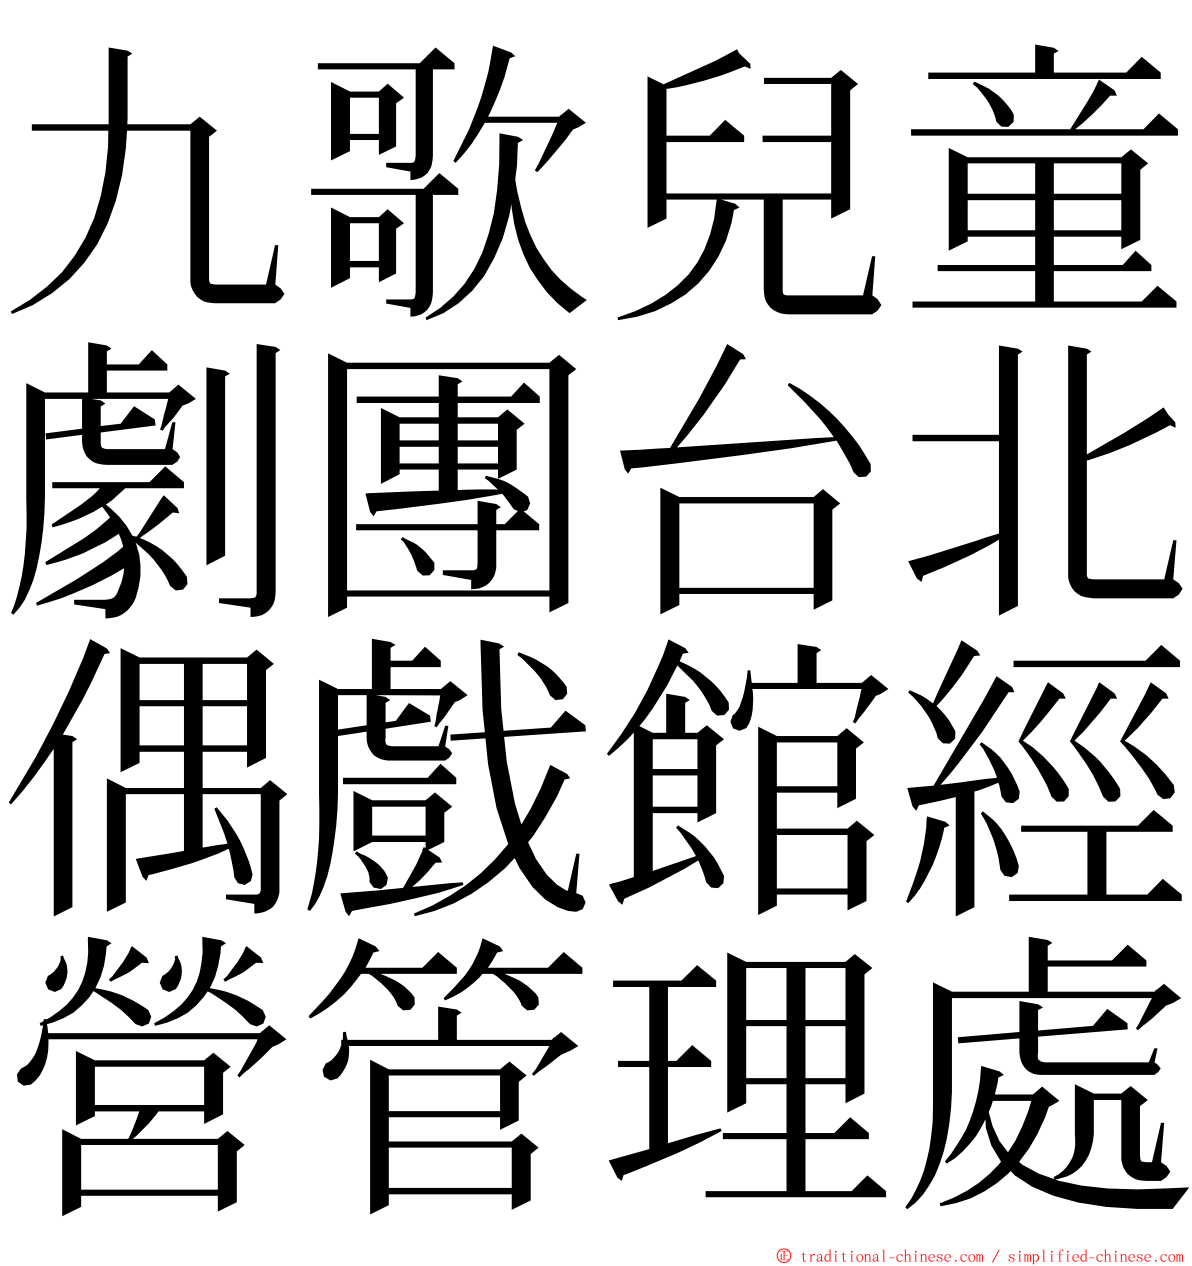 九歌兒童劇團台北偶戲館經營管理處 ming font